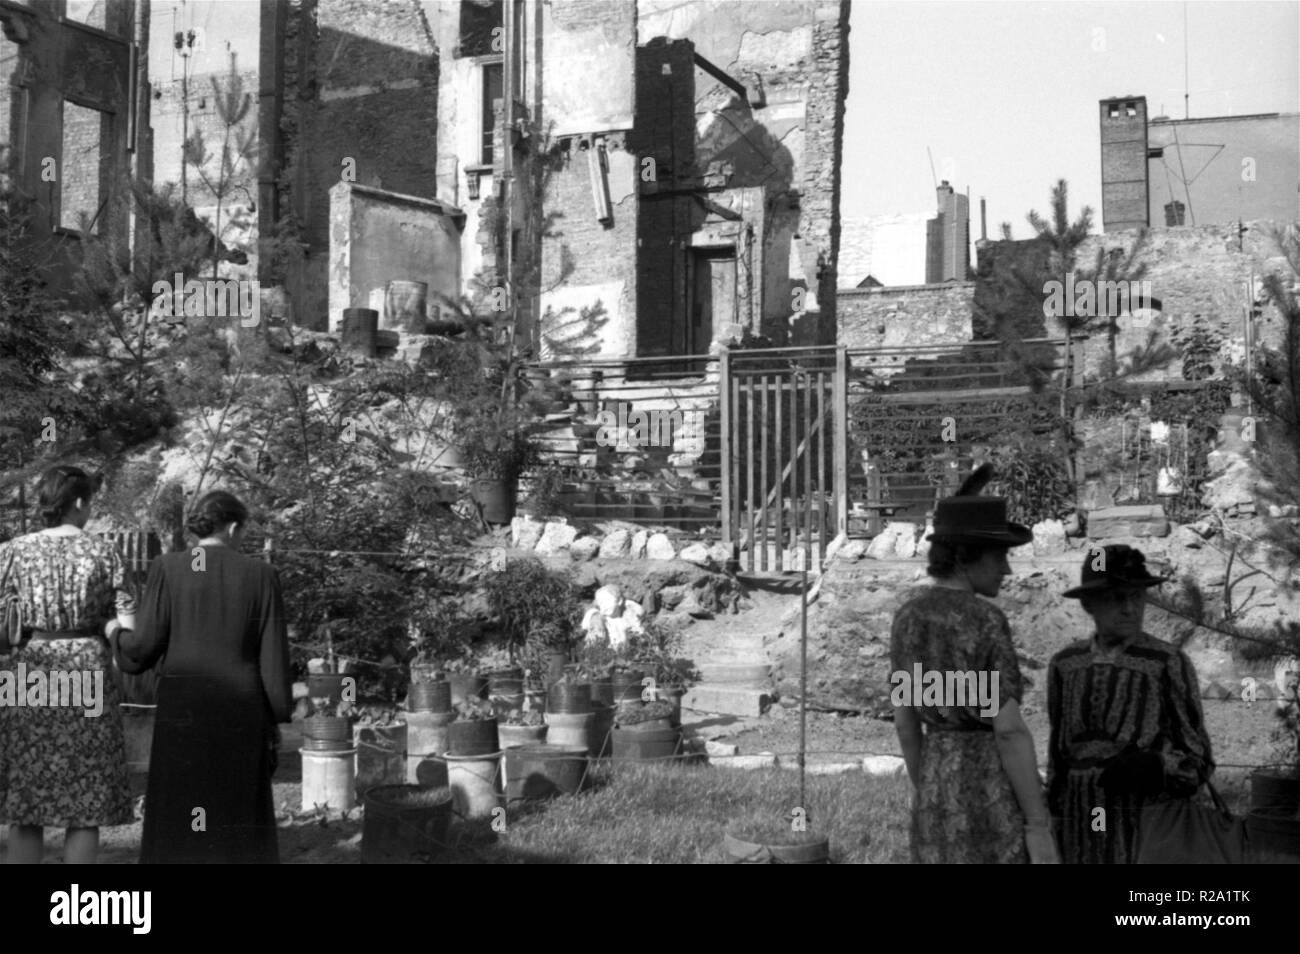 Häuserruinen / Einems britischen Bomberangriff - Häuser Ruinen nach einem britischen Bomber angreifen Stockfoto